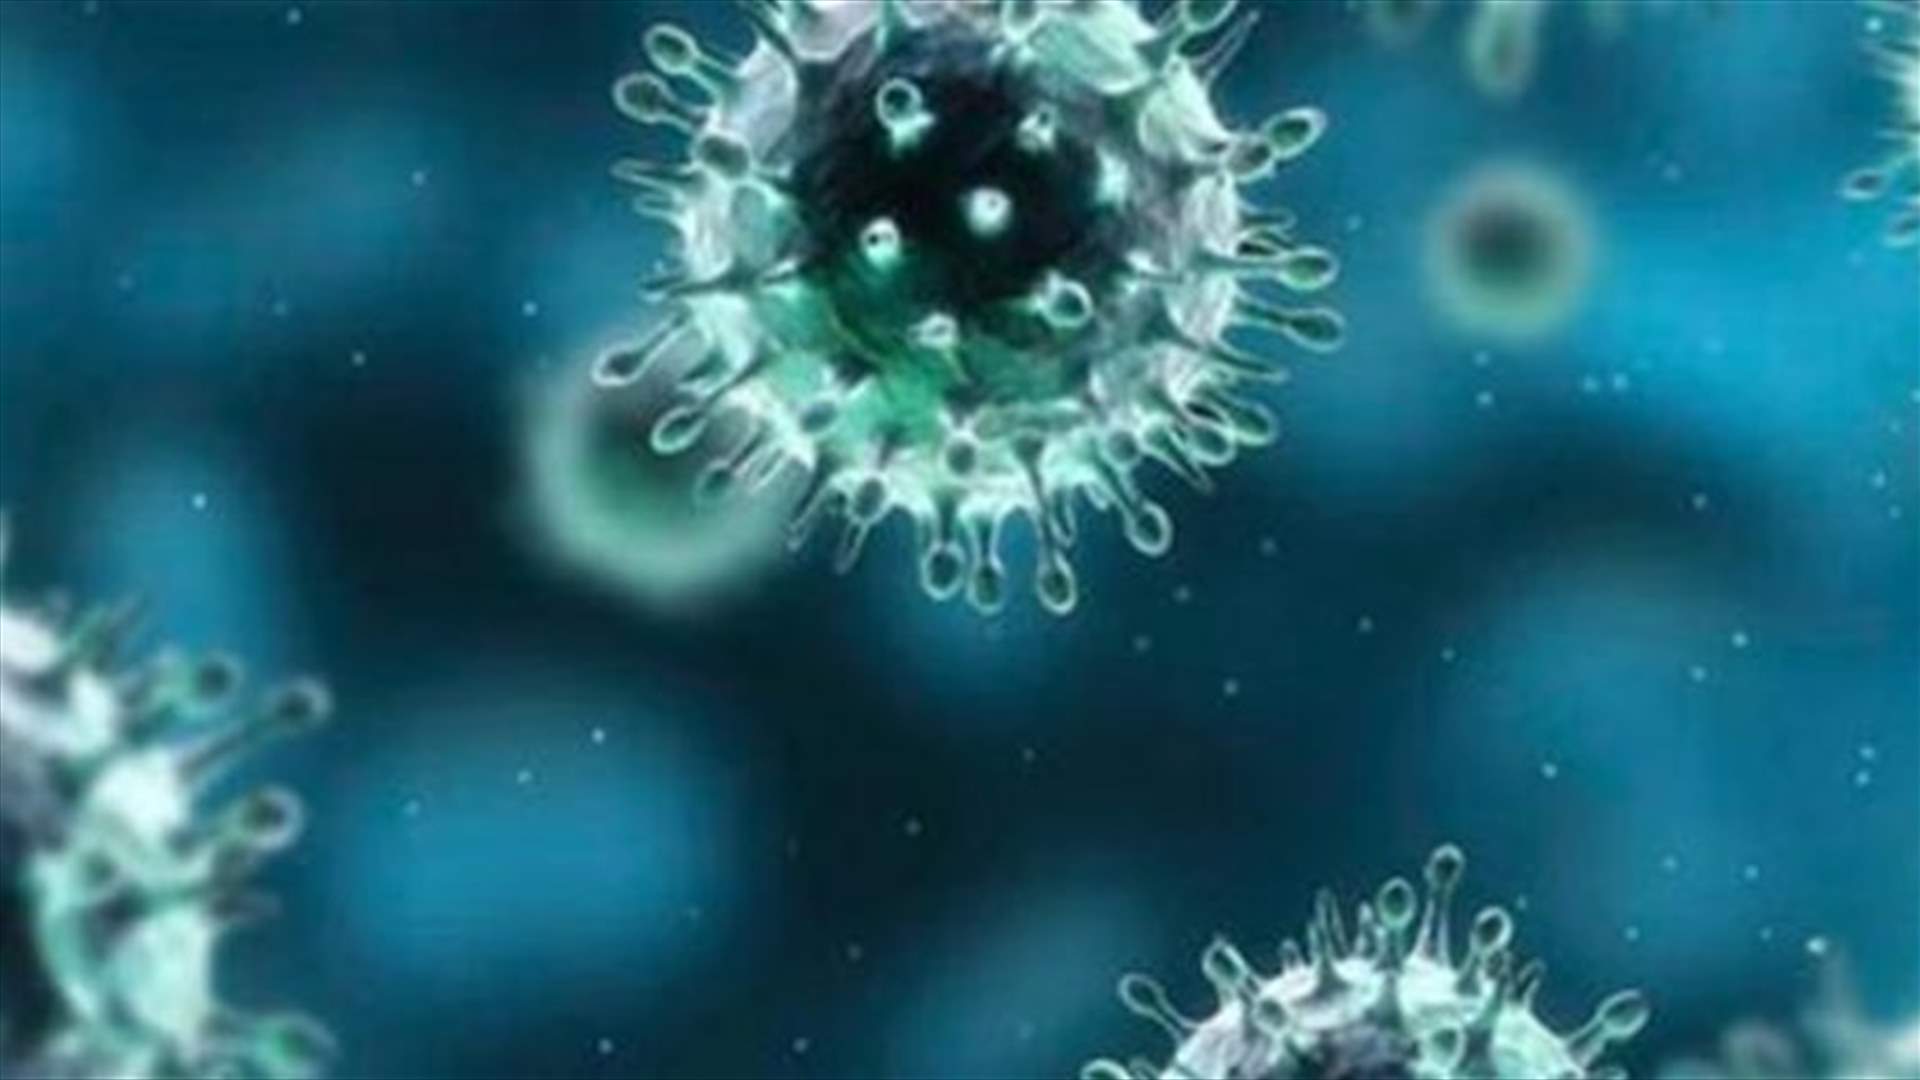 مسؤول صحي أميركي سابق يعتقد أن منشأ فيروس كورونا كان في مختبر صيني